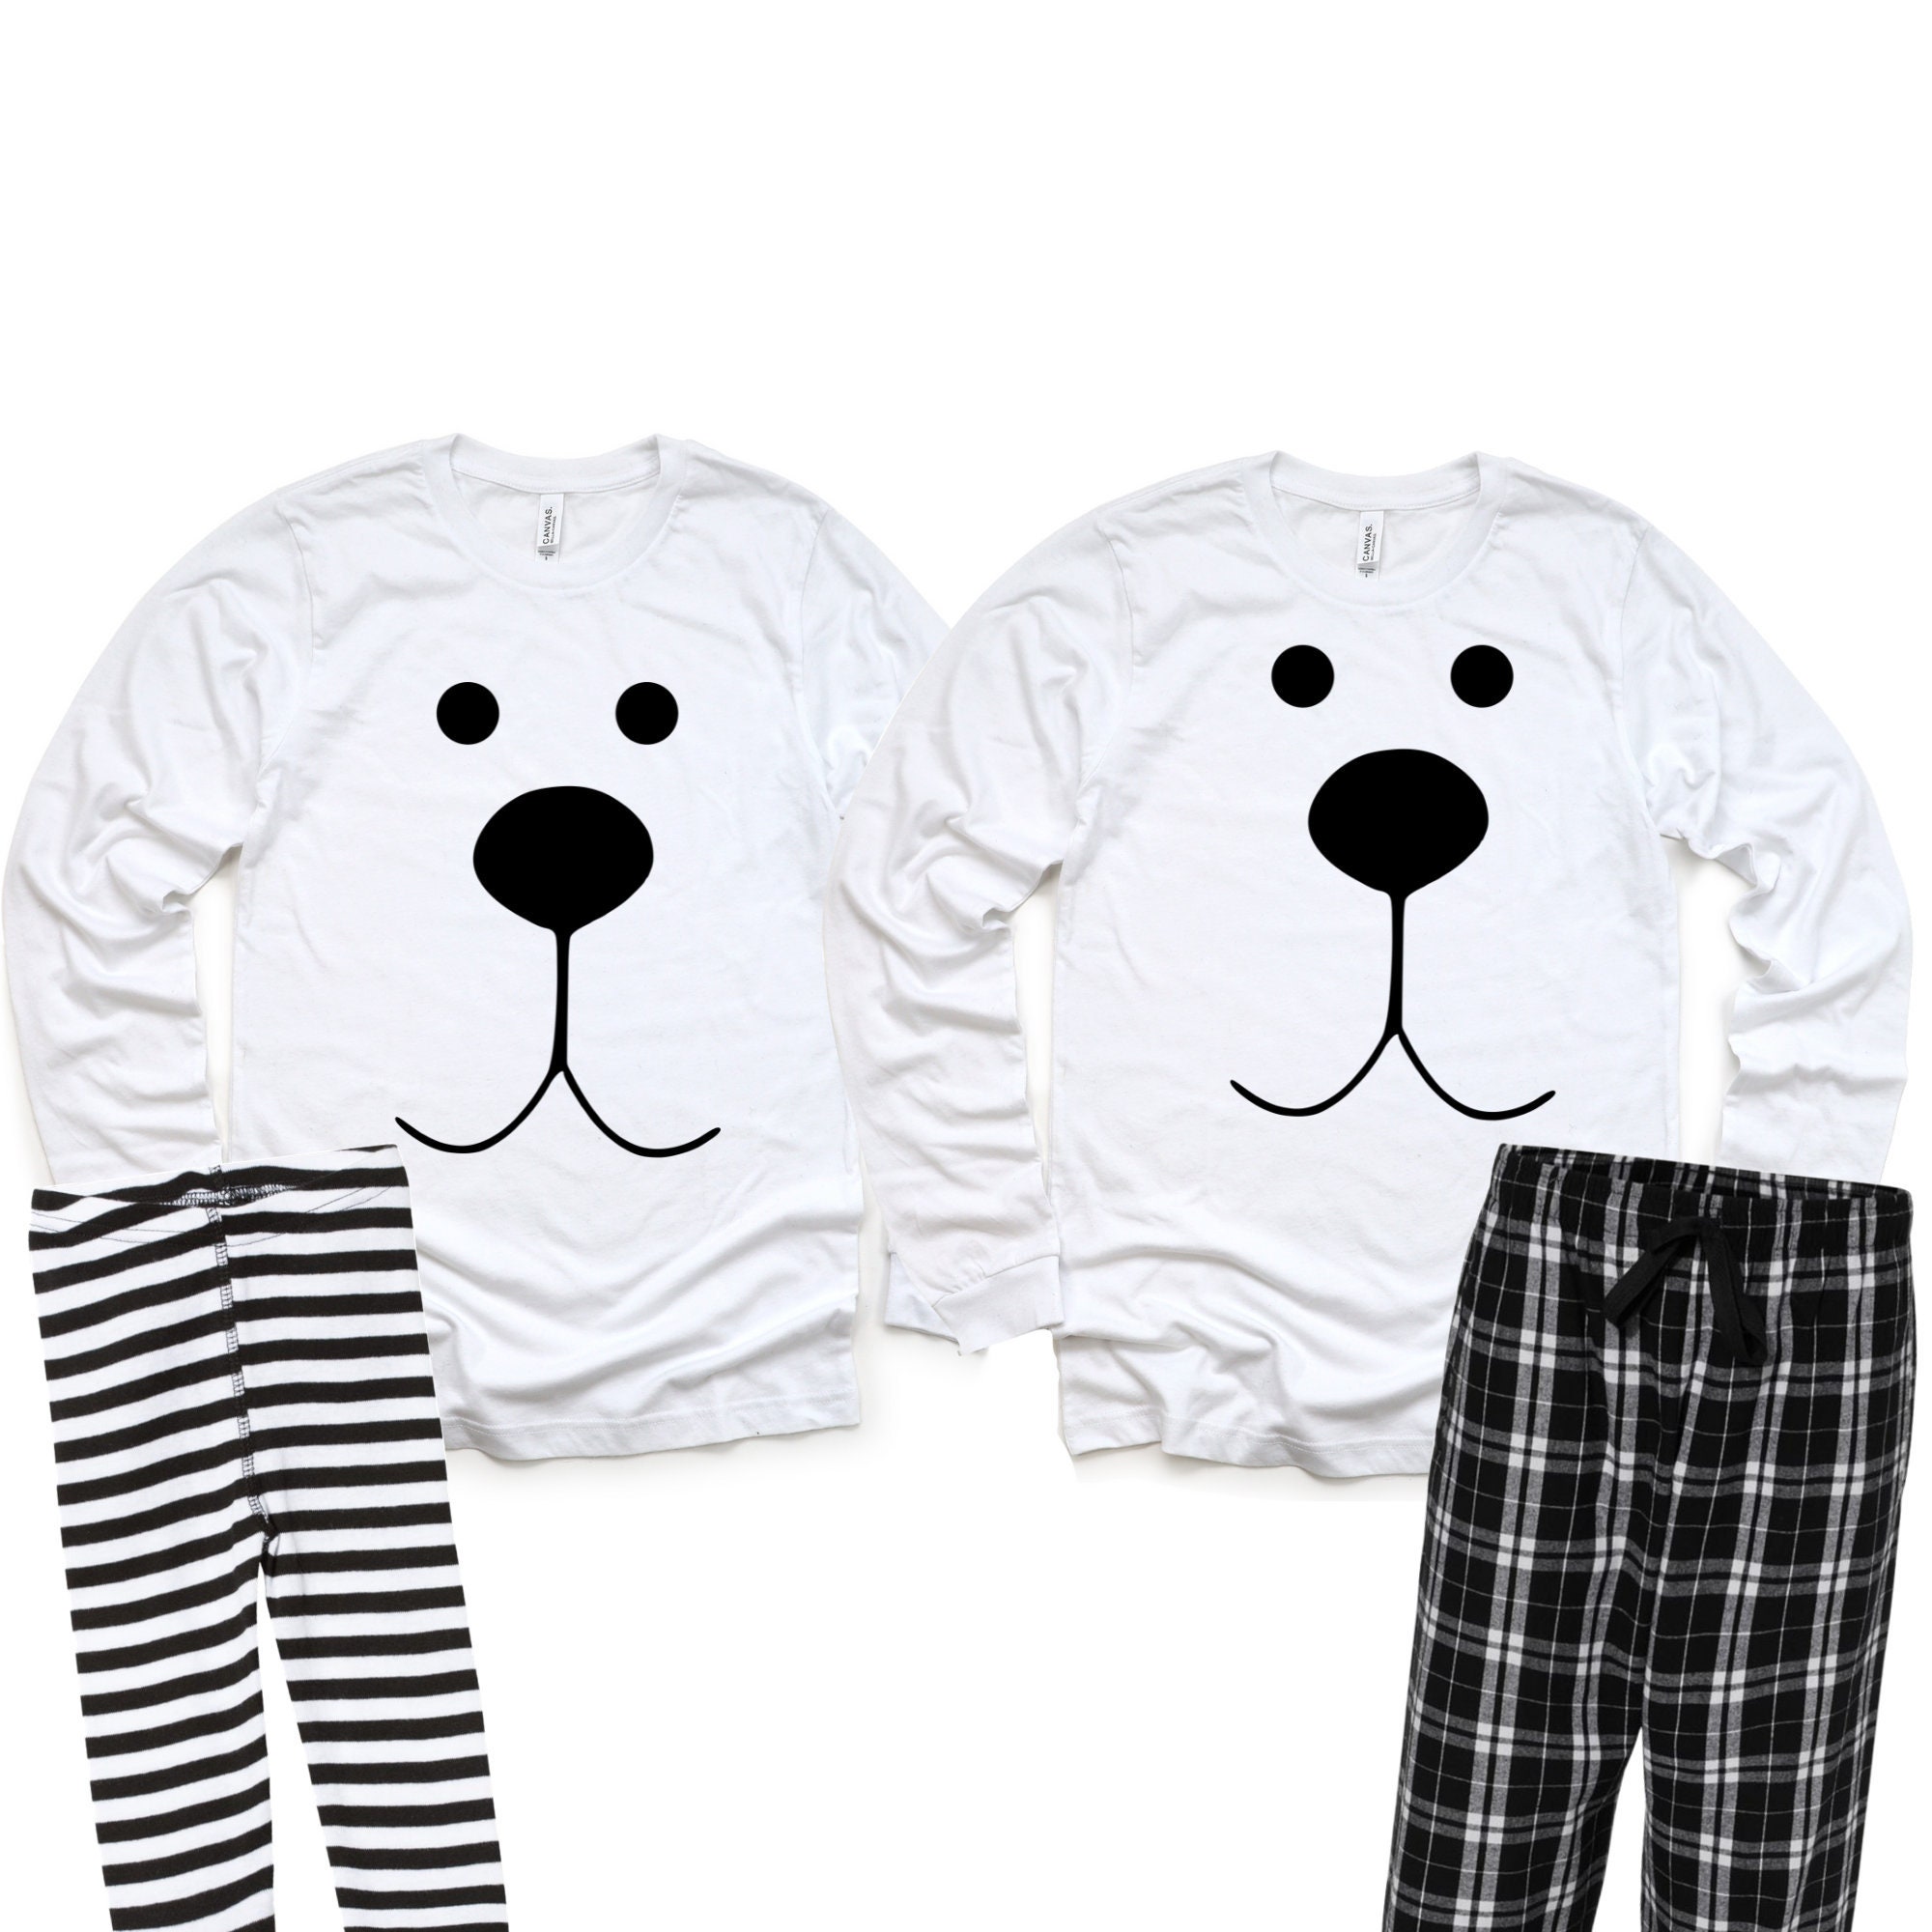 Polar Bear Pajamas, Christmas Pajamas, Matching Pajamas, Family Pajamas,  Plaid Pants, Polar Bear Face Pj's, Pajamas for the Whole Family -   Canada